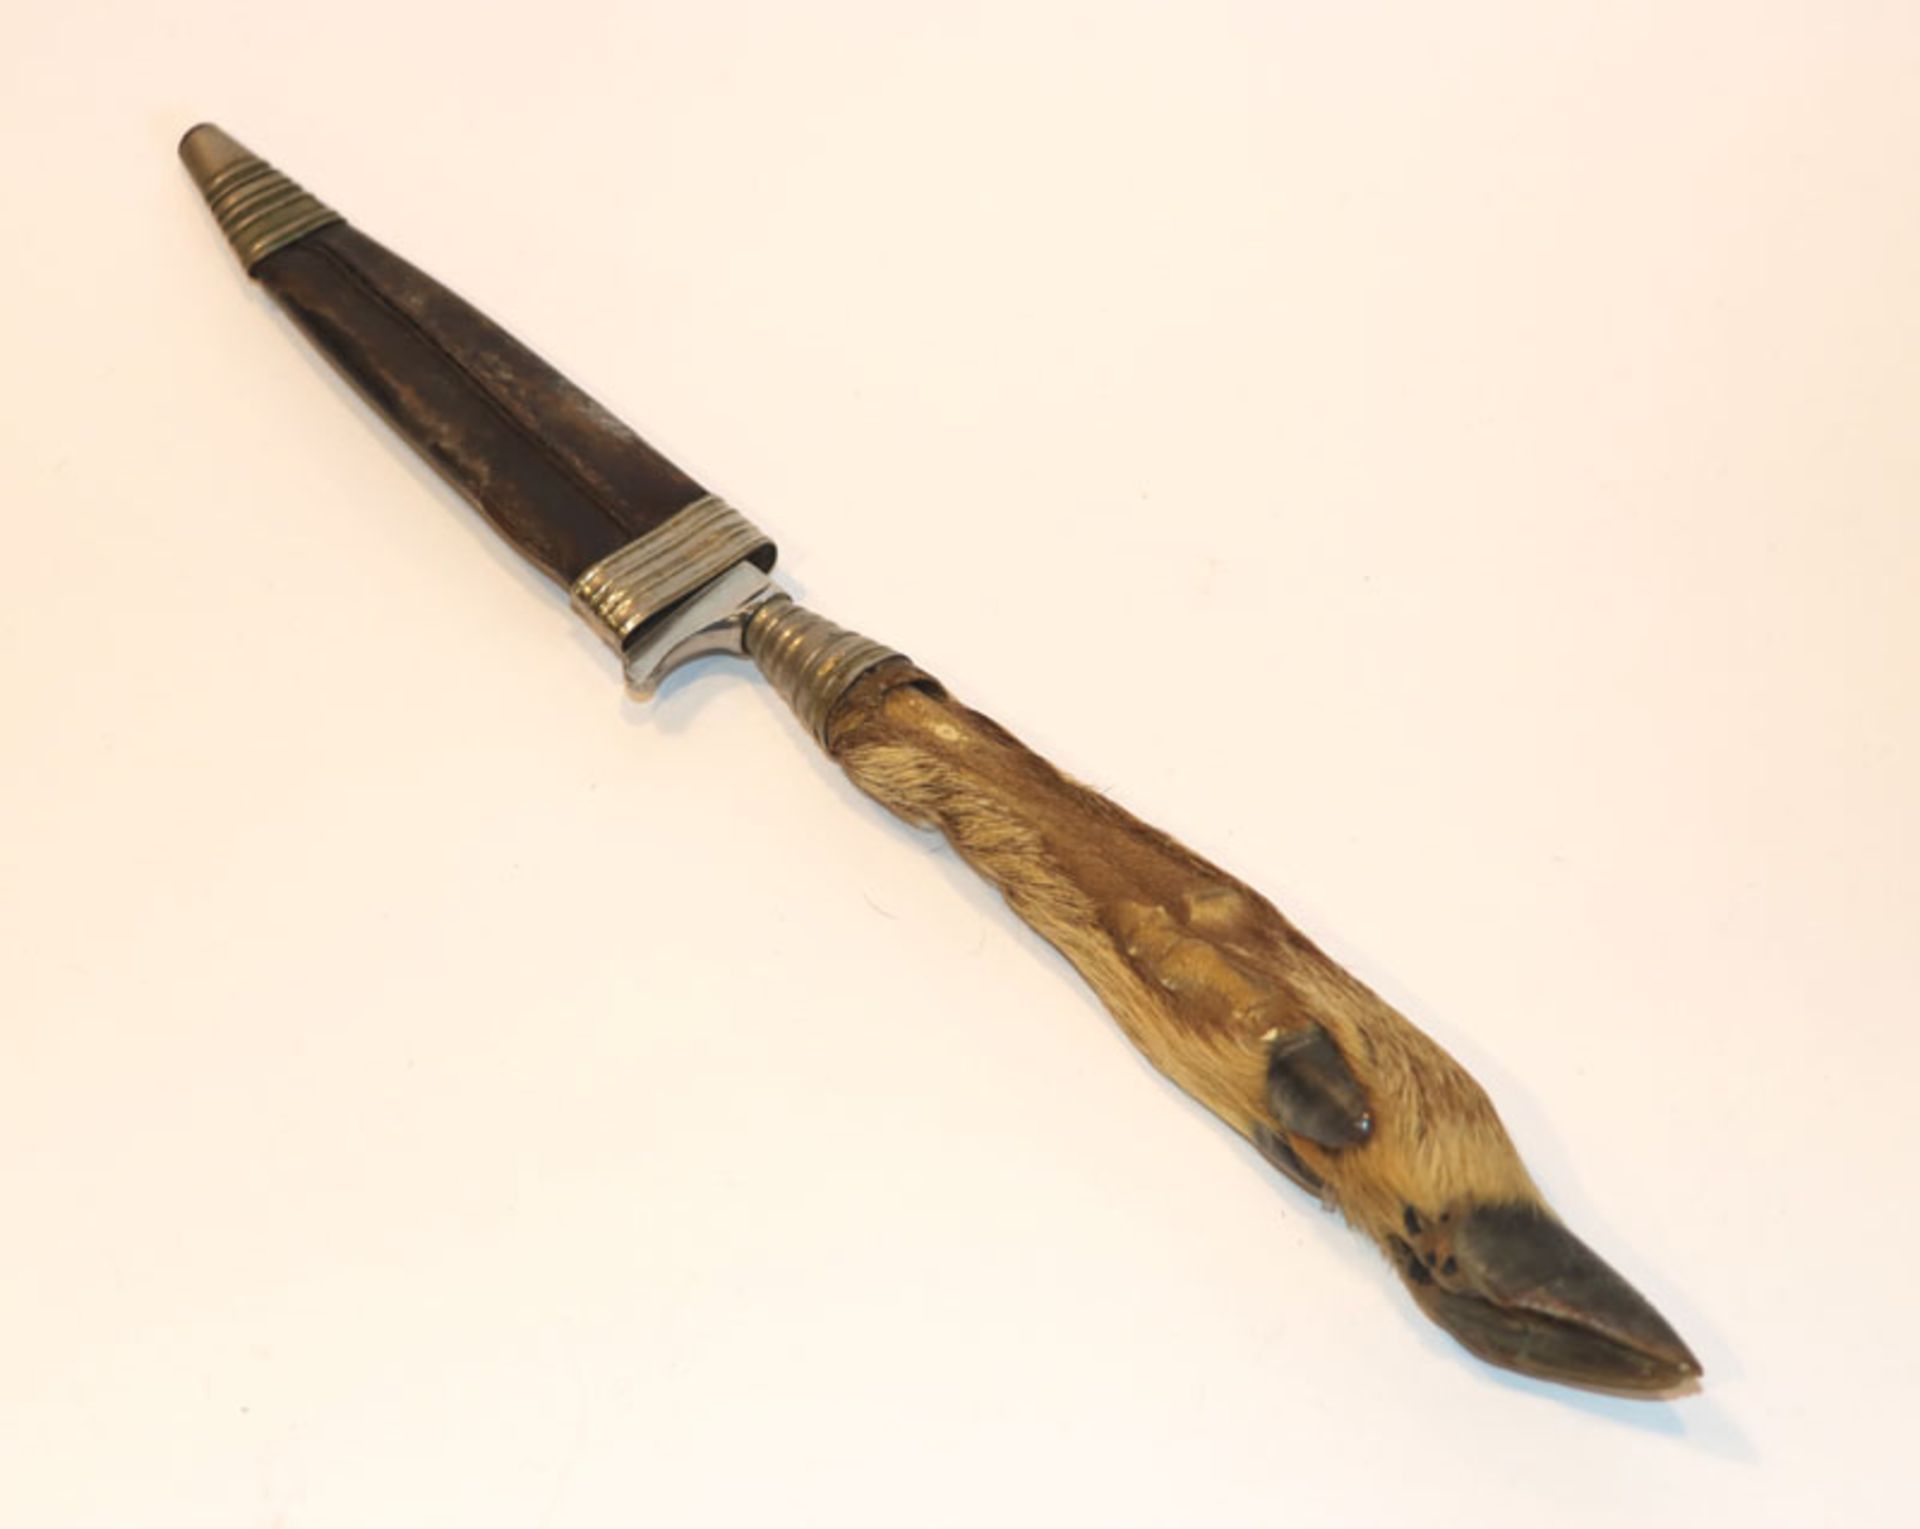 Messer mit Rehlauf-Griff und Lederscheide, starke Alters- und Gebrauchsspuren